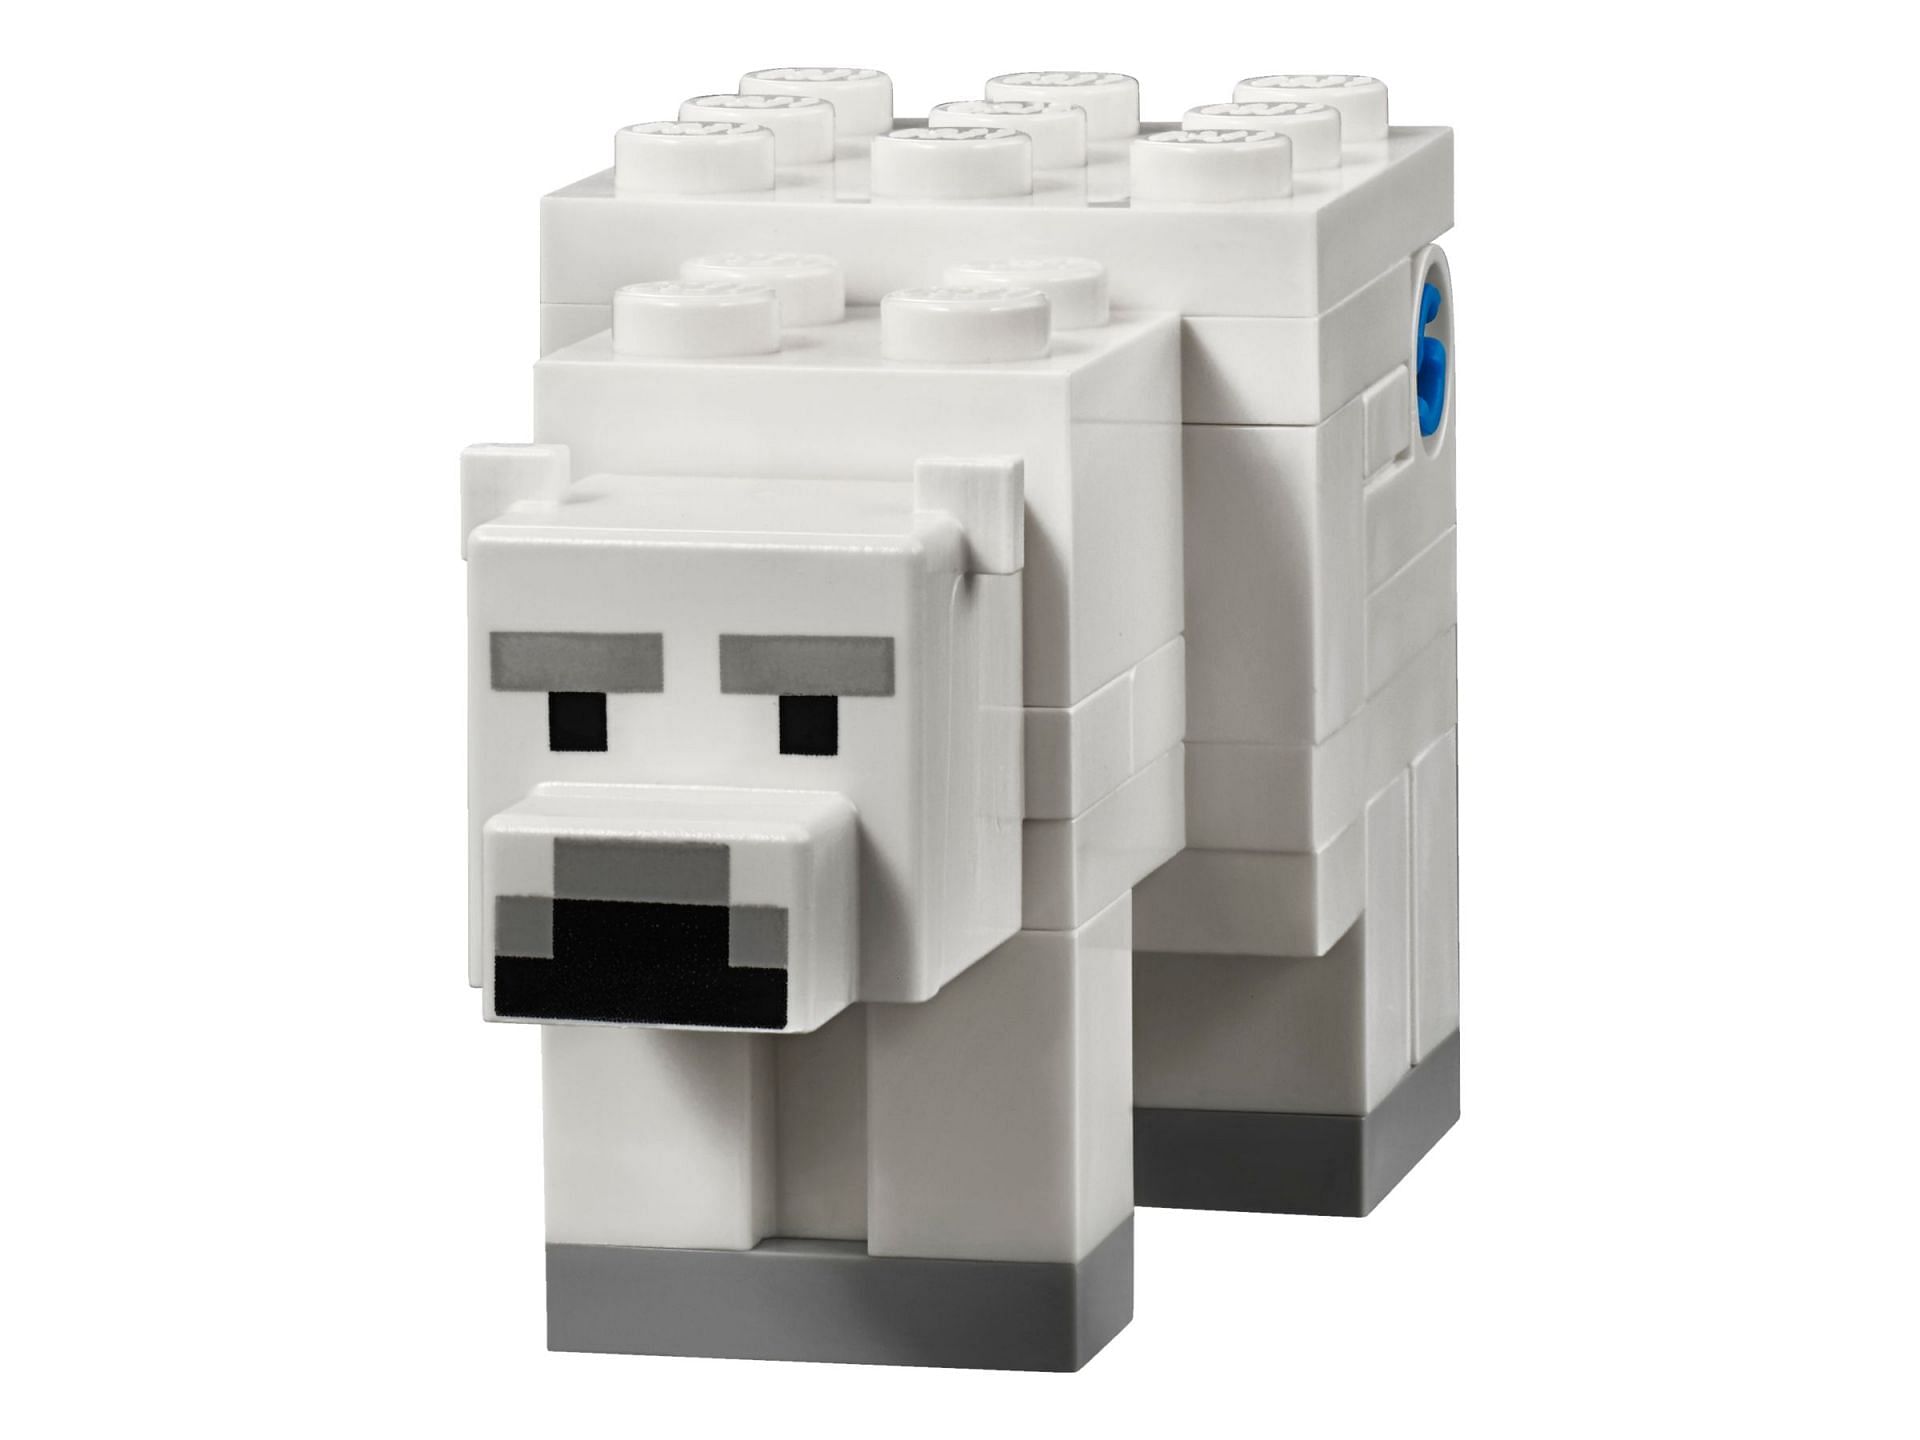 A Polar bear from the Polar Igloo Lego set (Image via Lego)